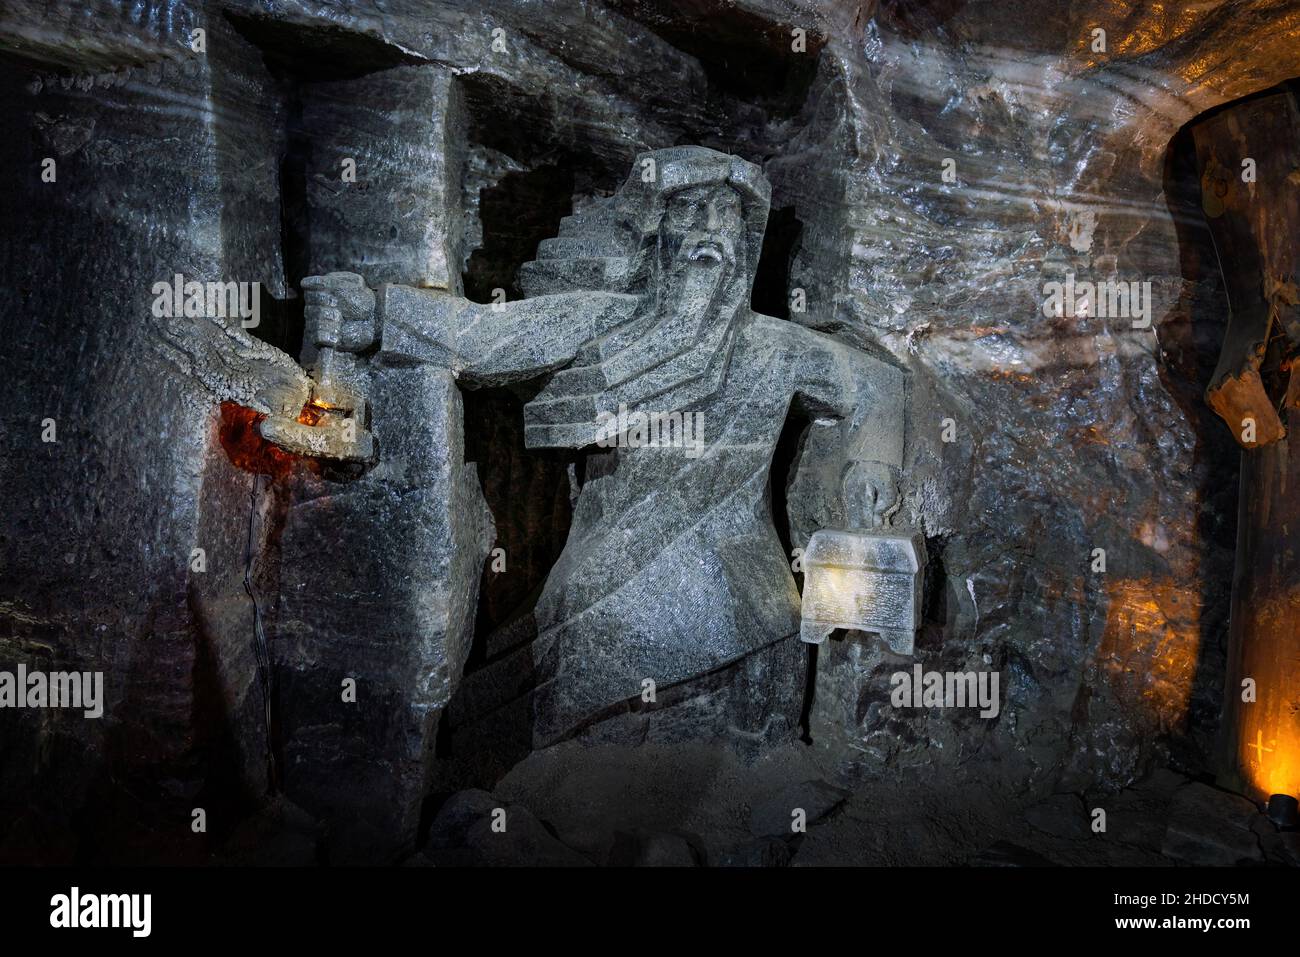 La scultura del tesoriere alla miniera di sale di Wieliczka - Wieliczka, Polonia Foto Stock